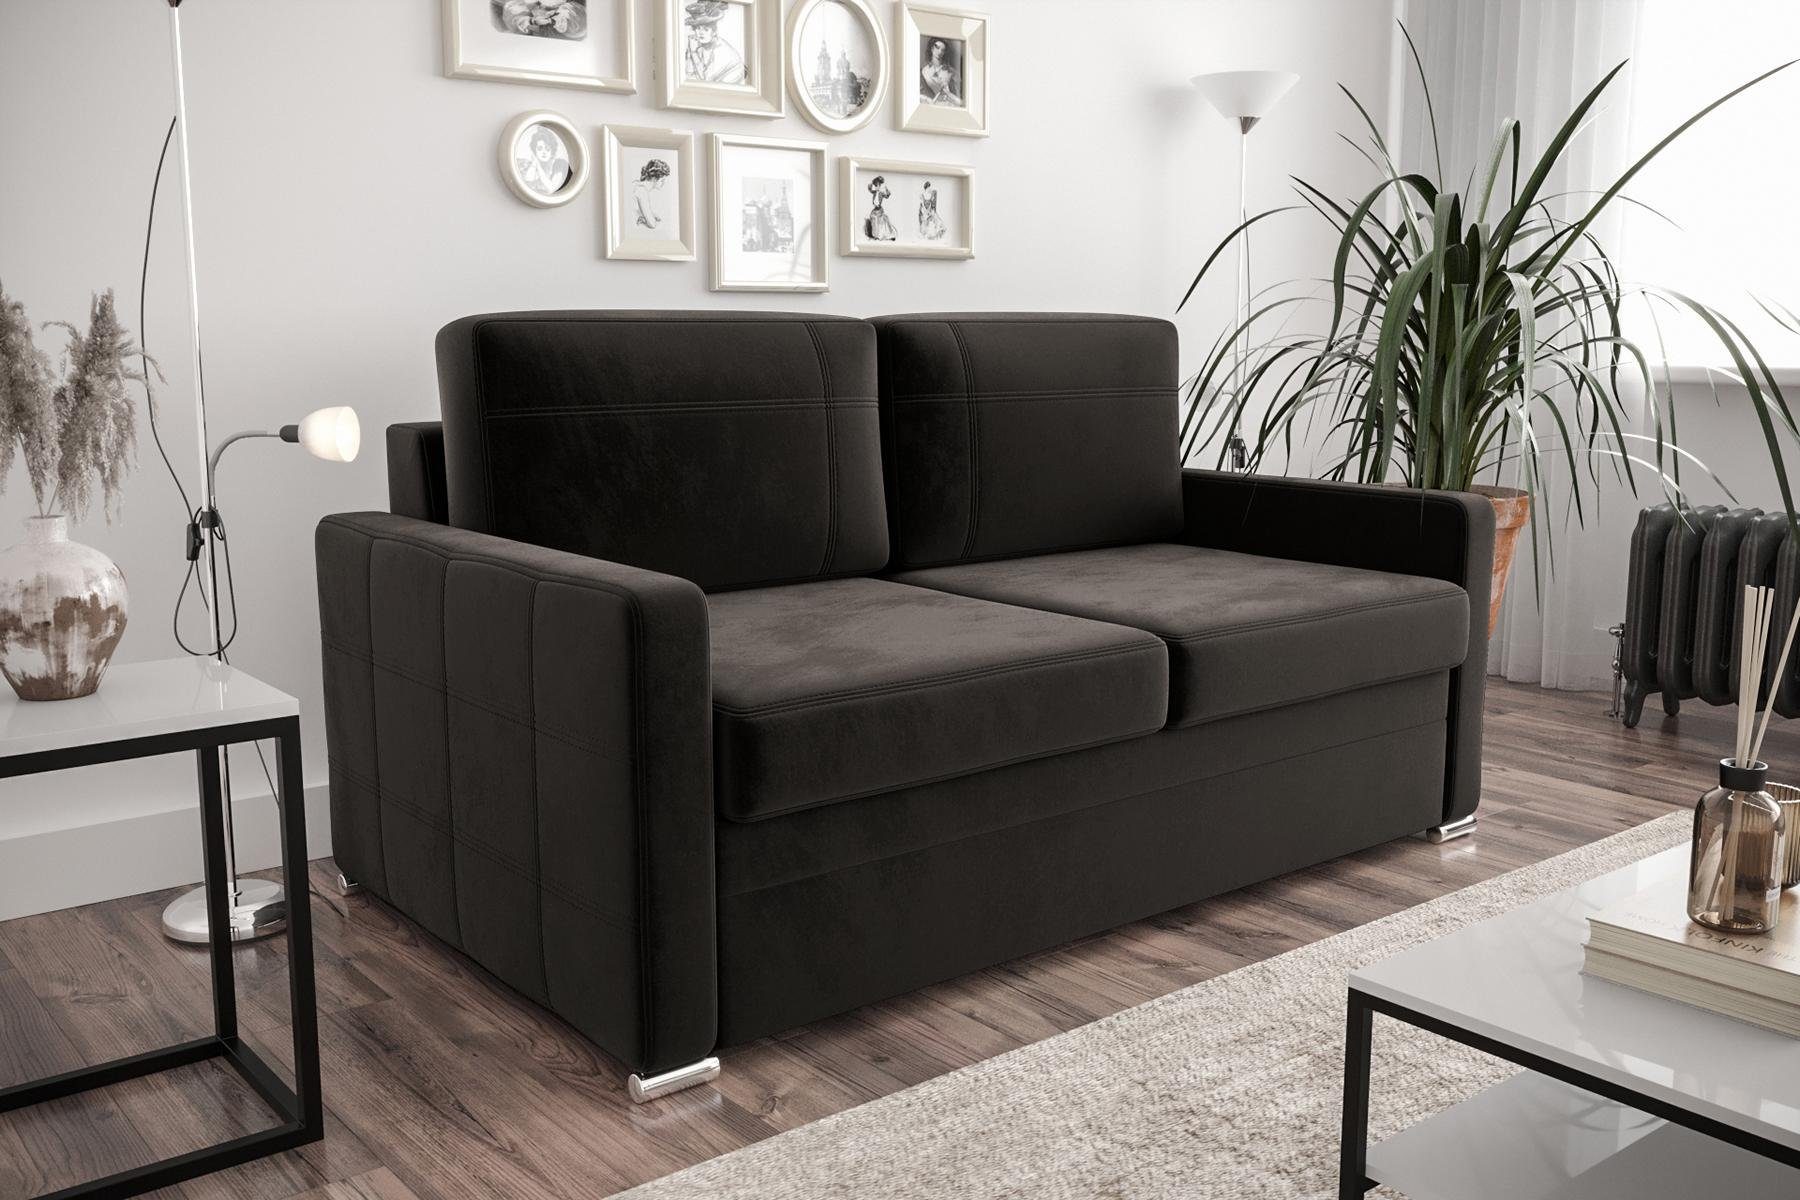 JVmoebel Sofa Designer 2-Sitzer Sofa Luxus Couch Polster Zweisitzer Couchen, Made in Europe Schwarz | Schwarz | Schwarz | Alle Sofas